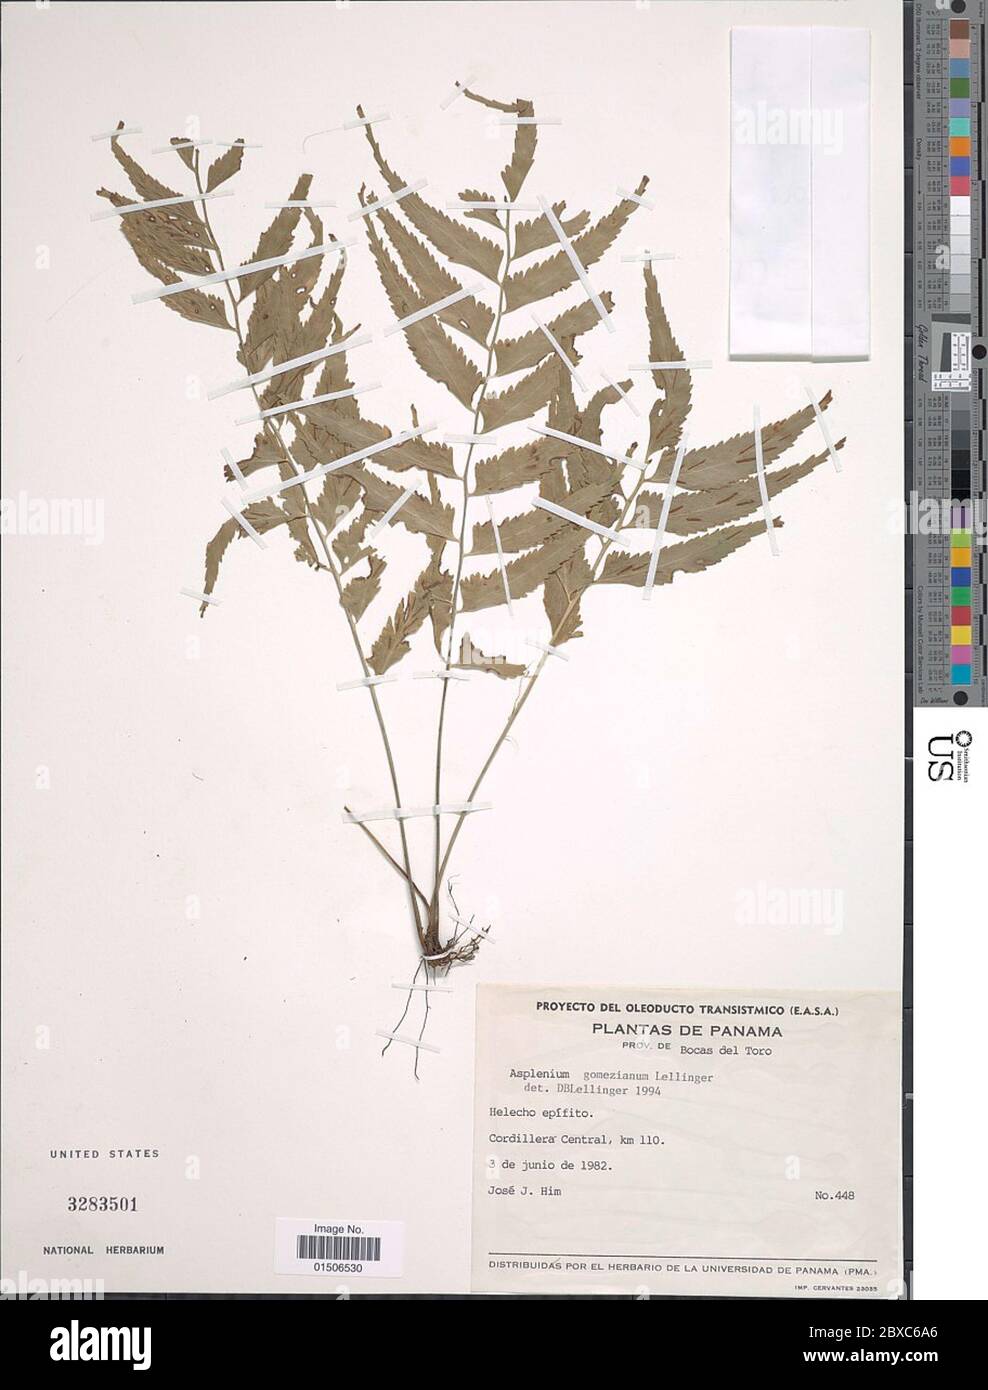 Asplenium gomezianum Lellinger Asplenium gomezianum Lellinger. Stock Photo